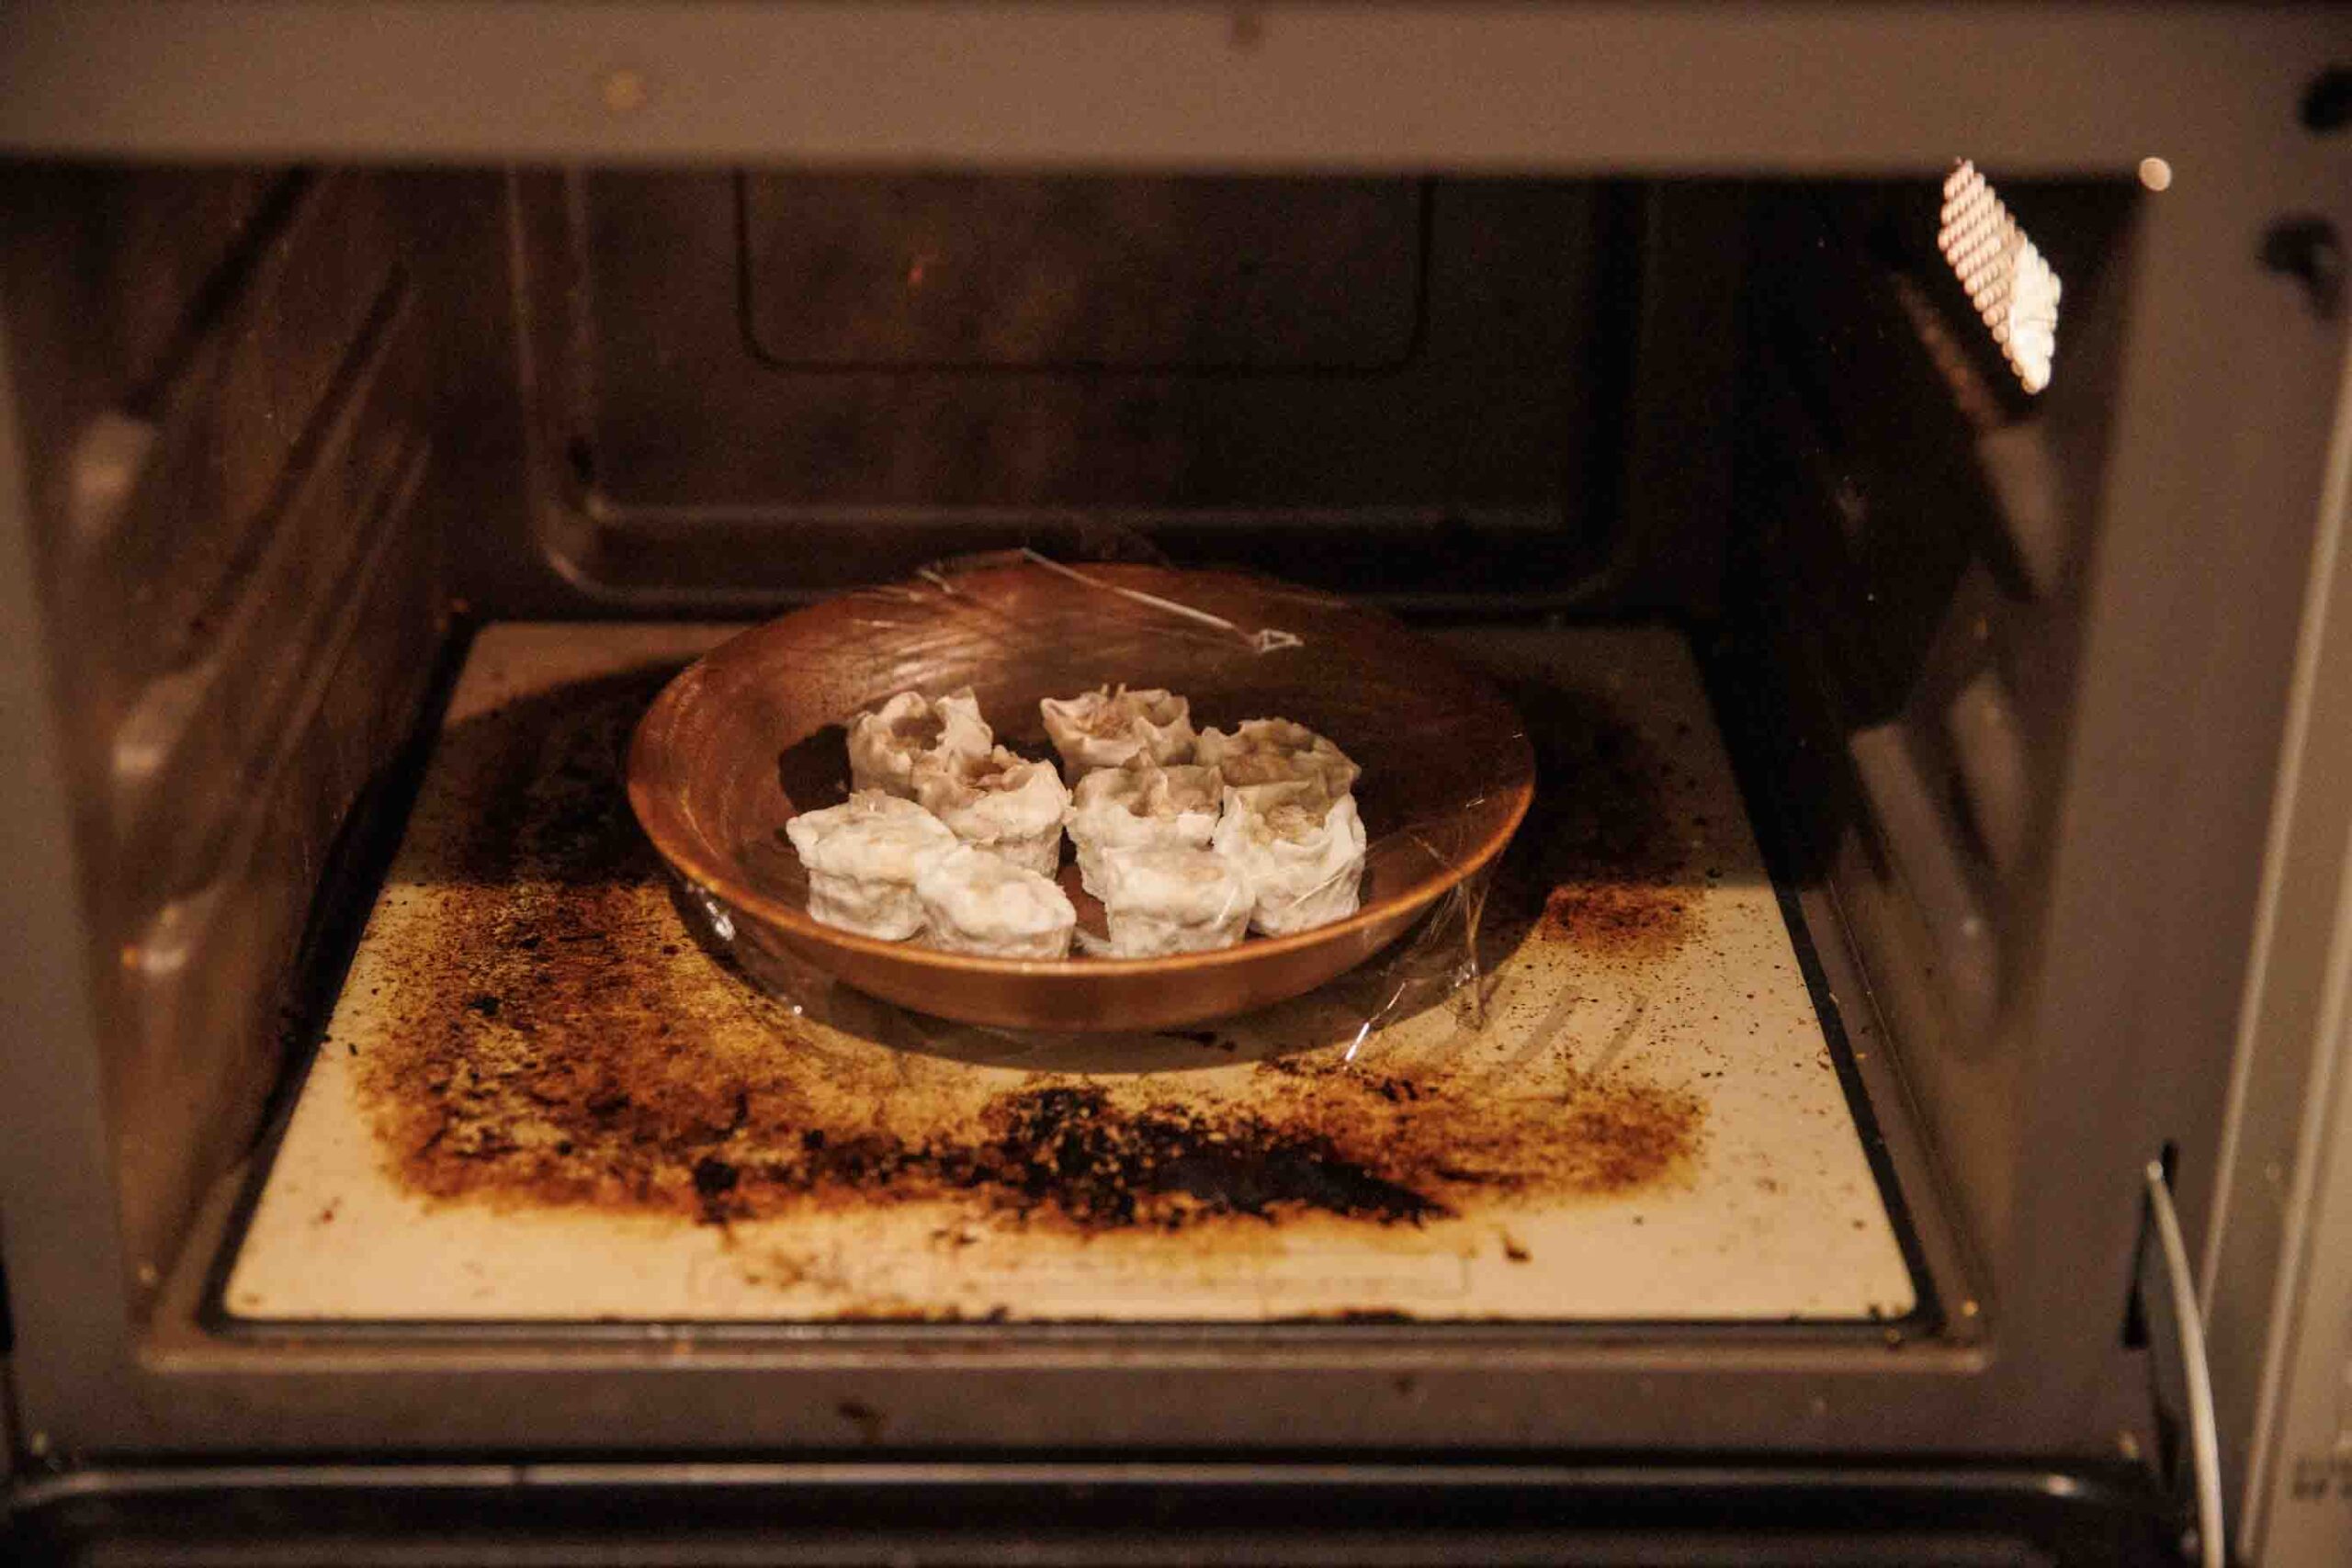 味の素の冷凍食品「おつまみ焼売」を電子レンジで加熱している写真